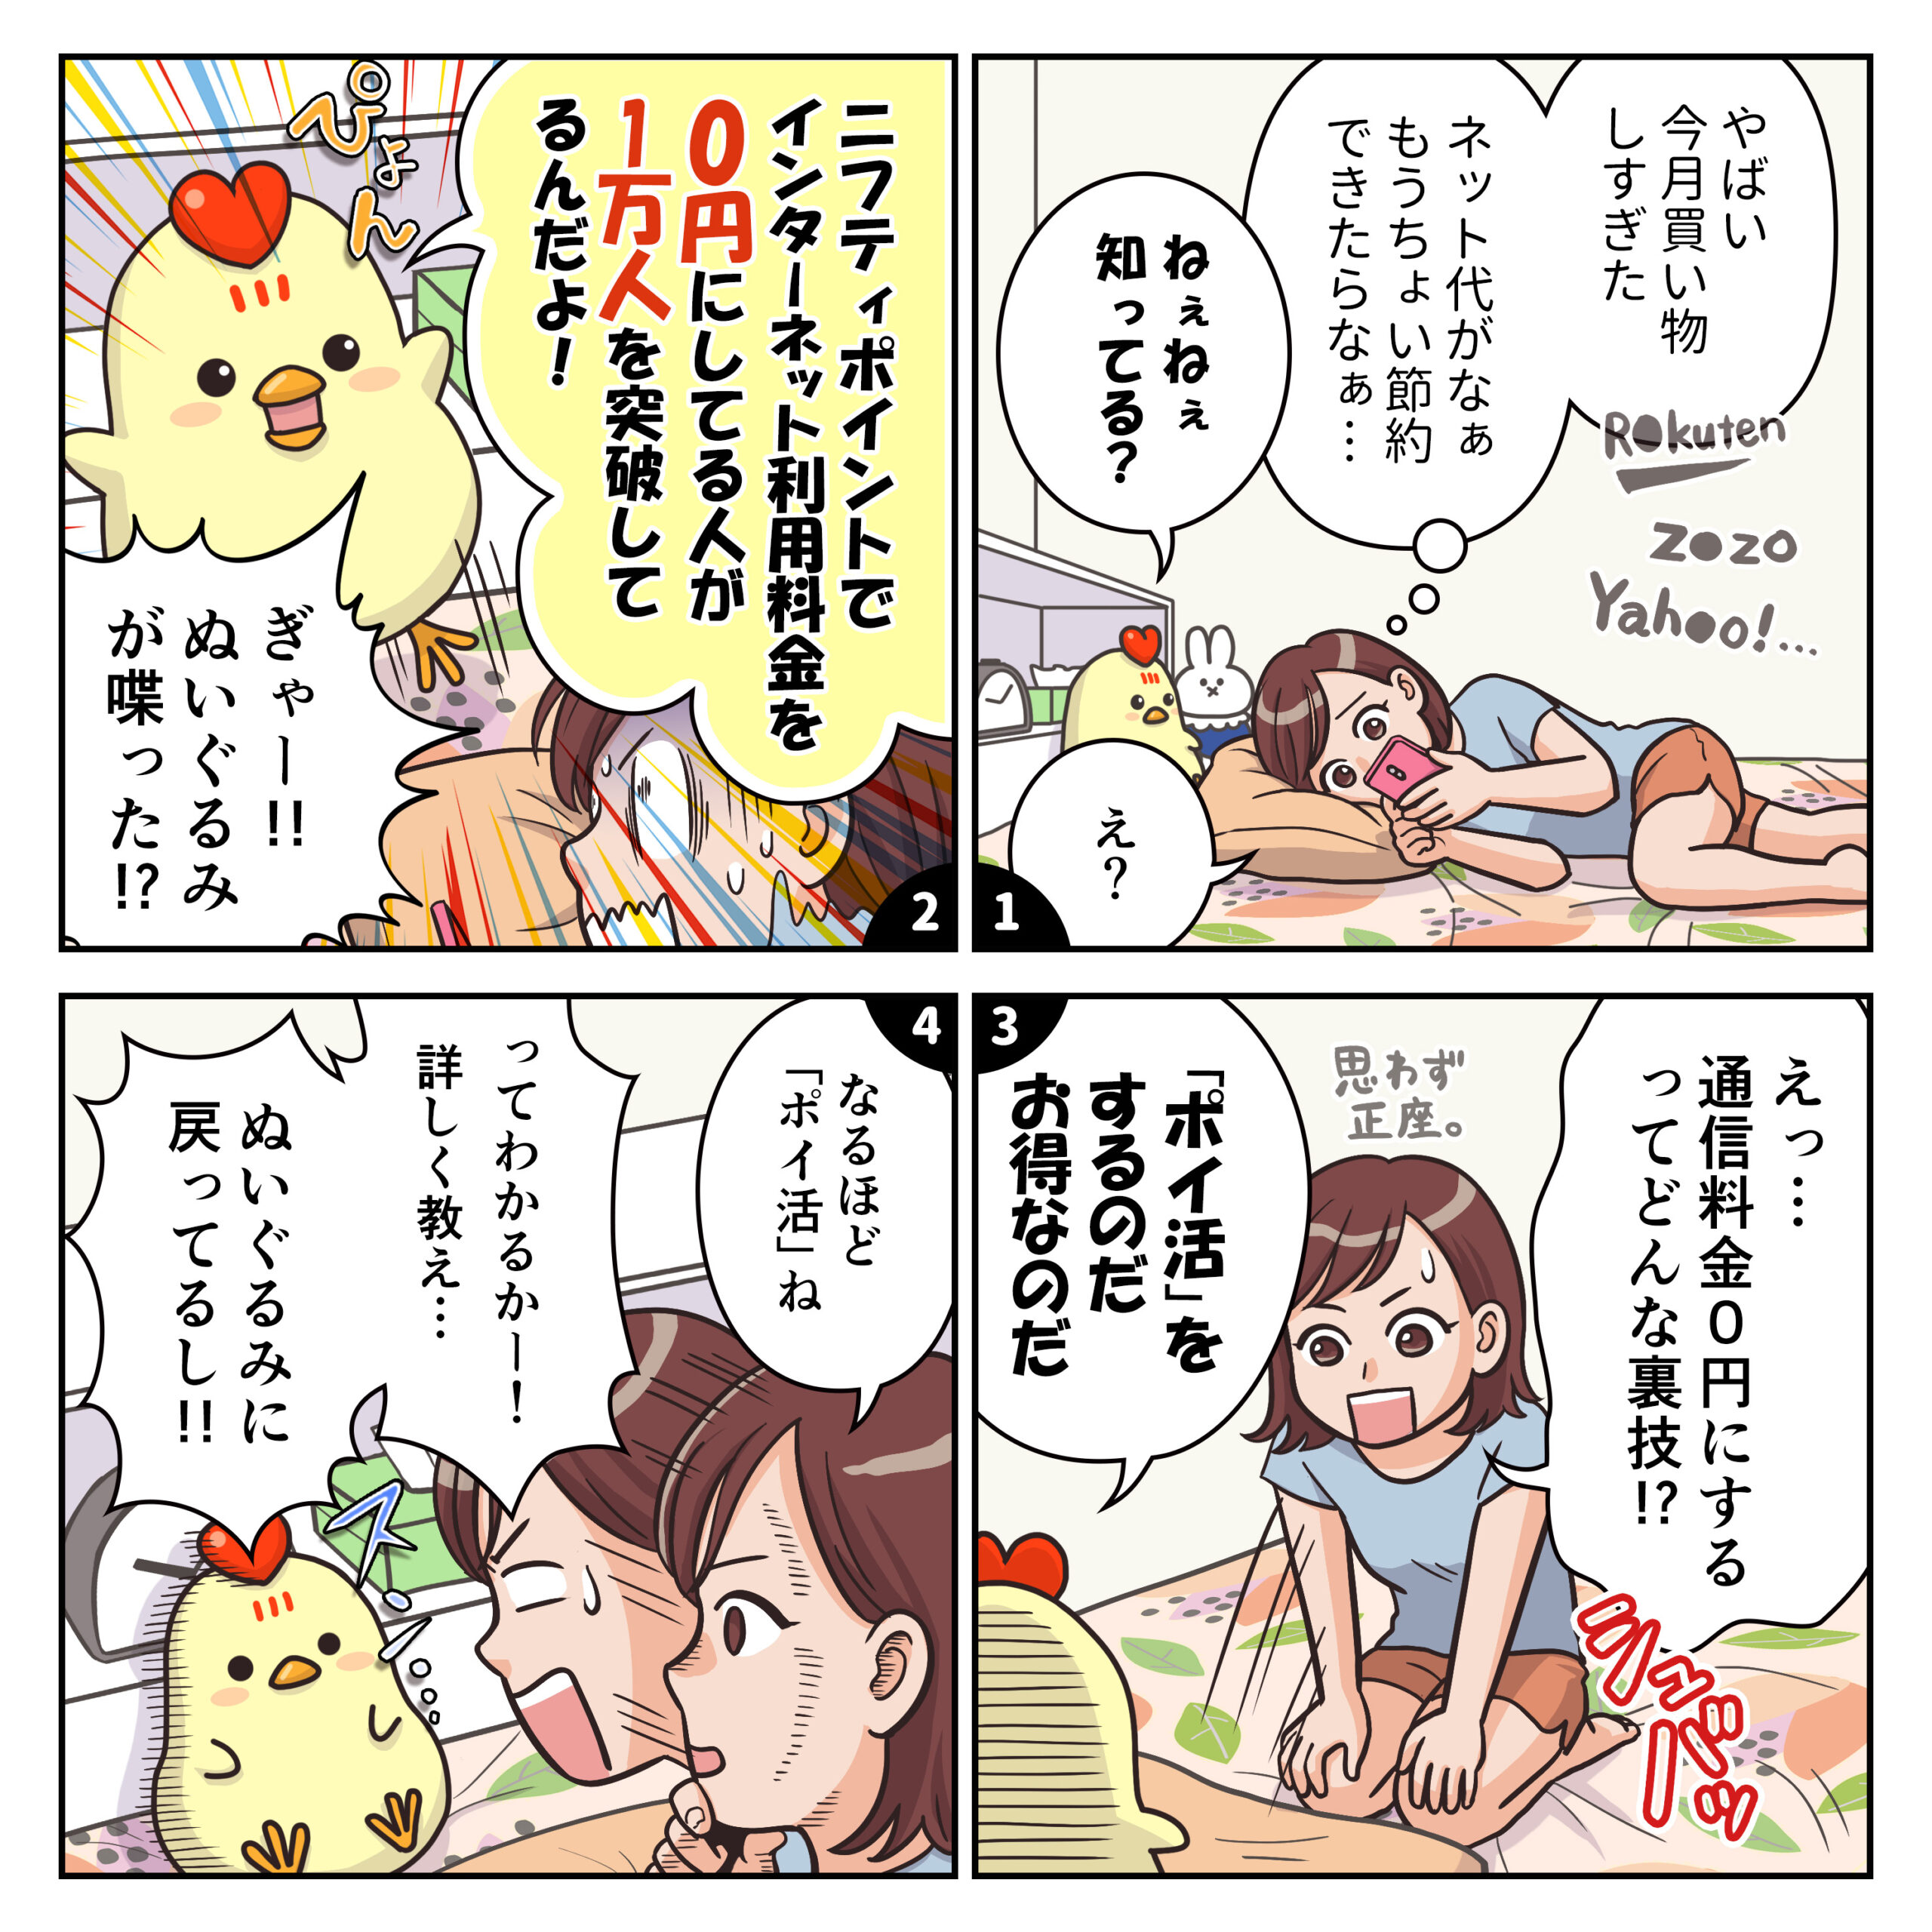 ニフティ株式会社 instagram投稿用4コマ漫画（9月分）